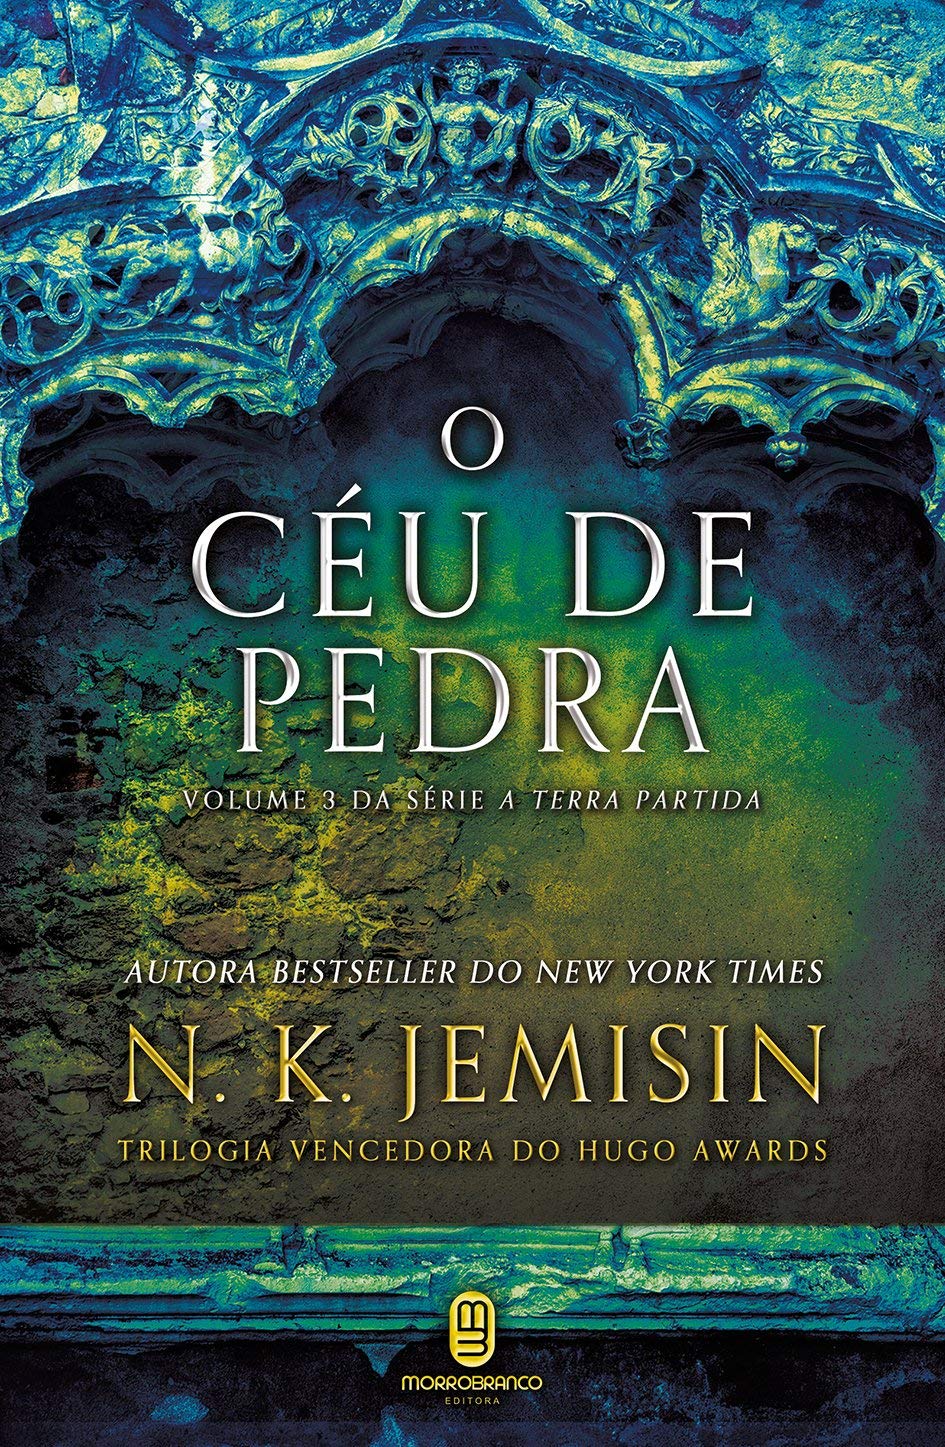 O Céu de Pedra by N.K. Jemisin